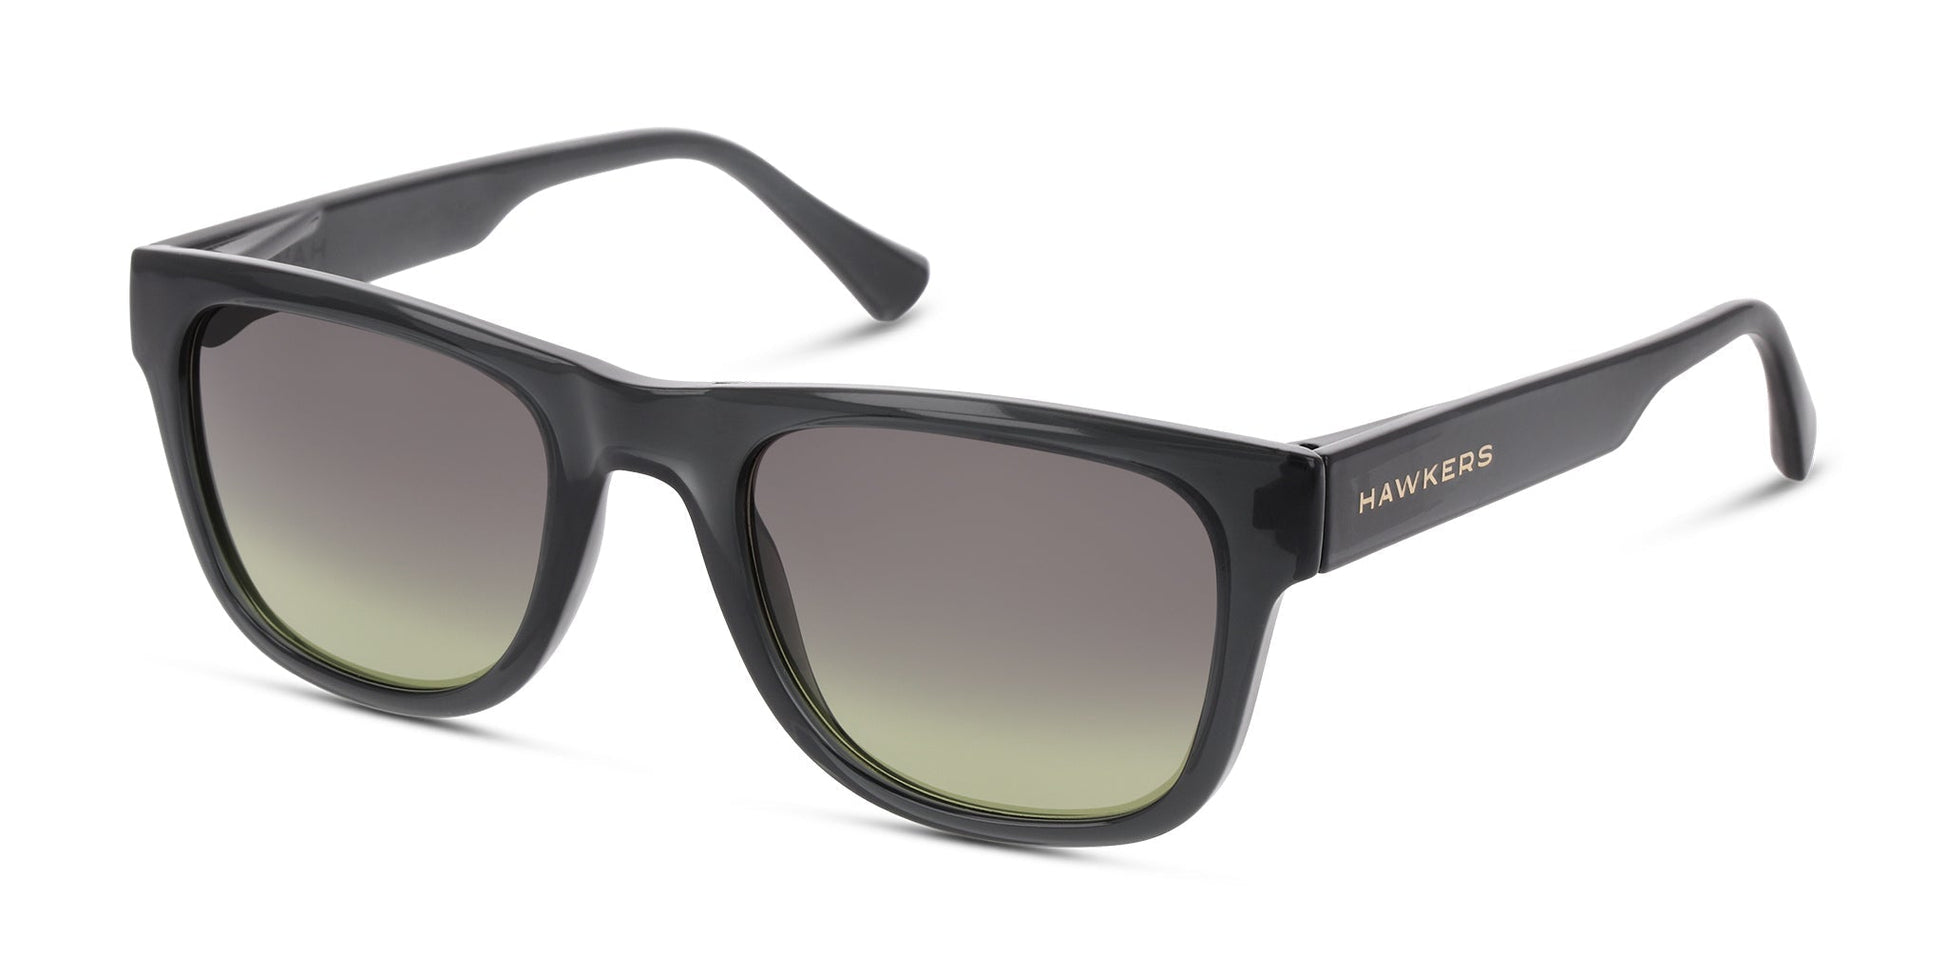 Ofertas en gafas de sol de hawkers para mujer - AliExpress